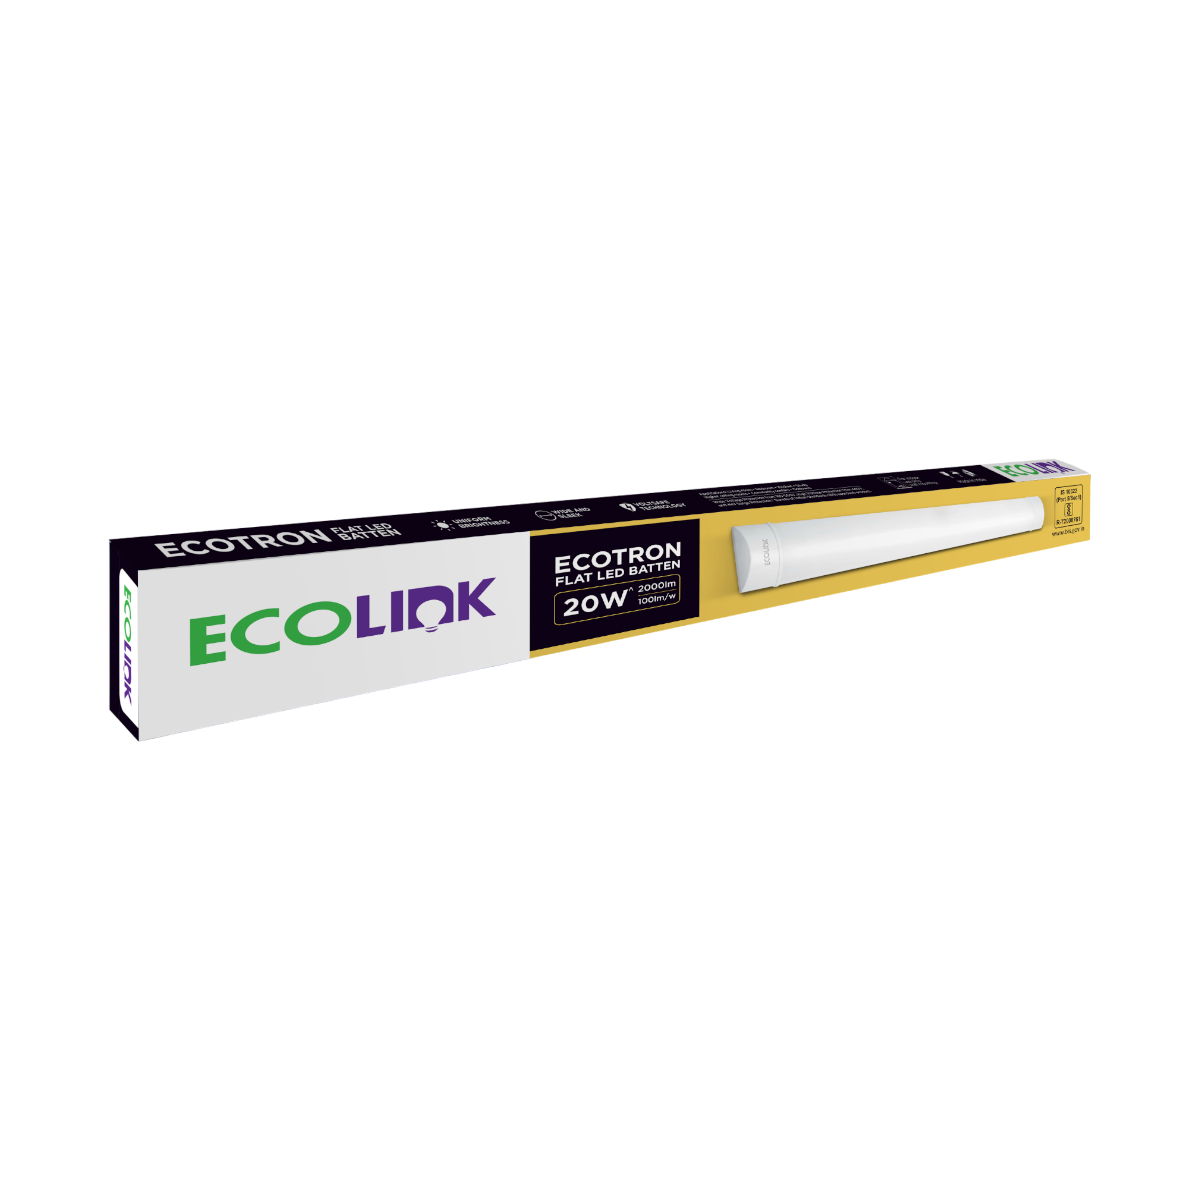 EcoLink EcoTron LED Tube light